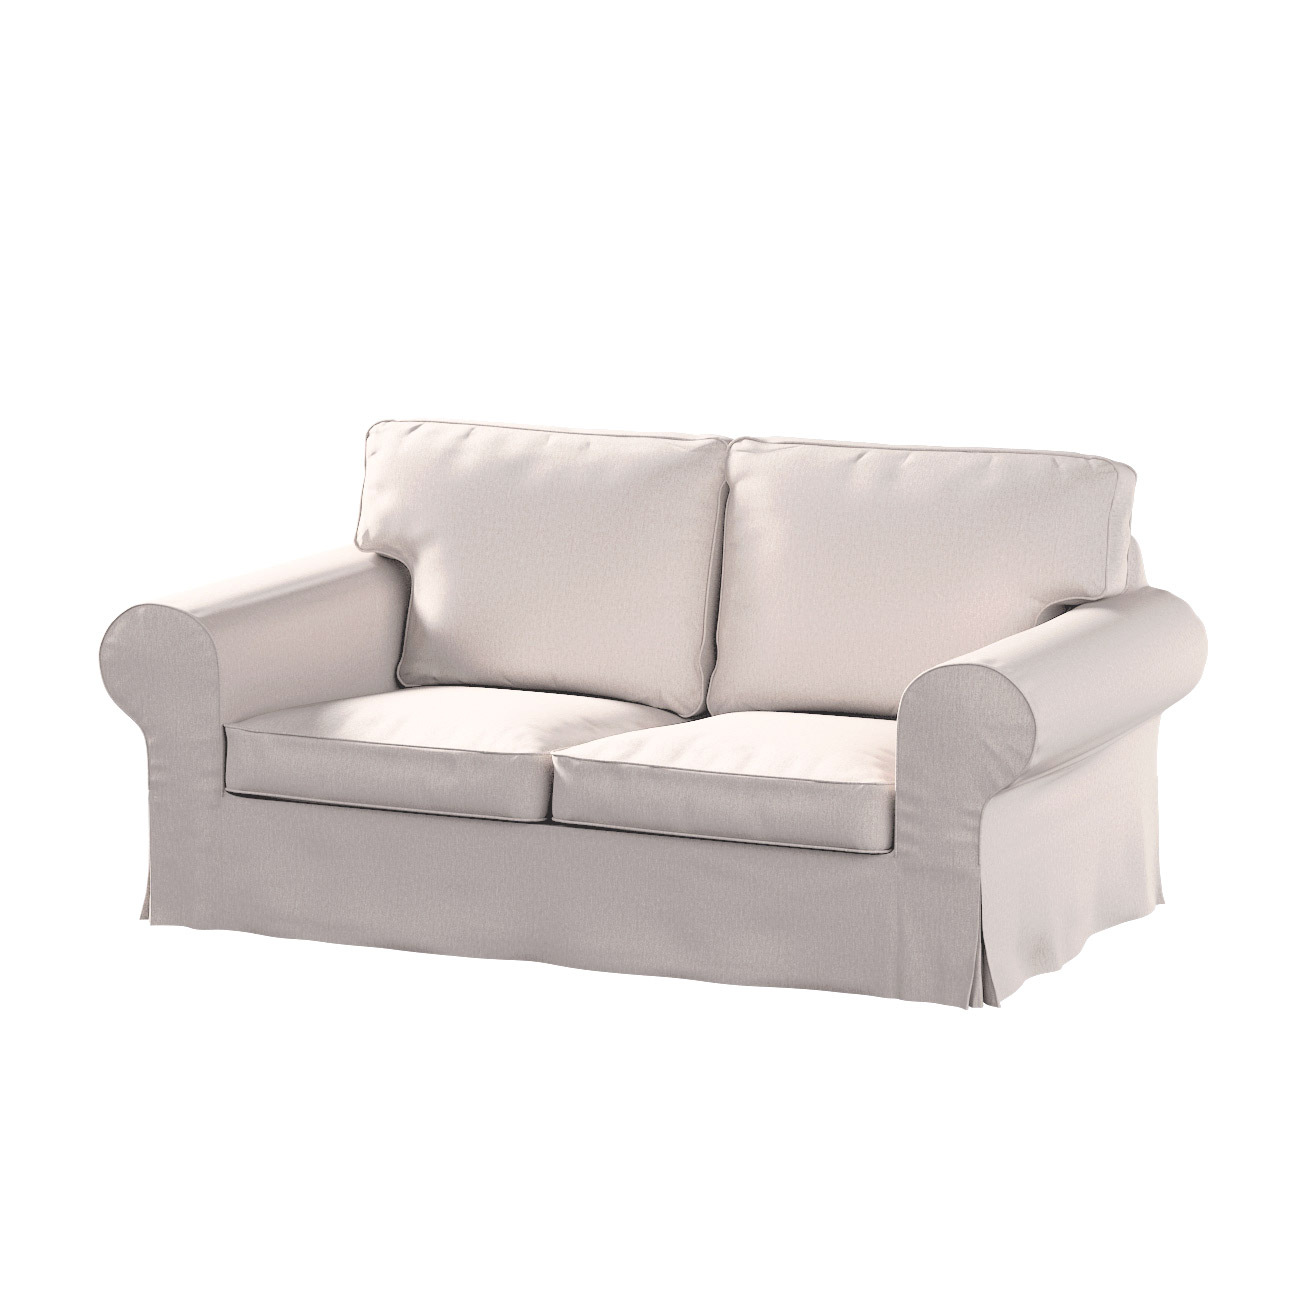 Bezug für Ektorp 2-Sitzer Sofa nicht ausklappbar, hellbeige, Sofabezug für günstig online kaufen